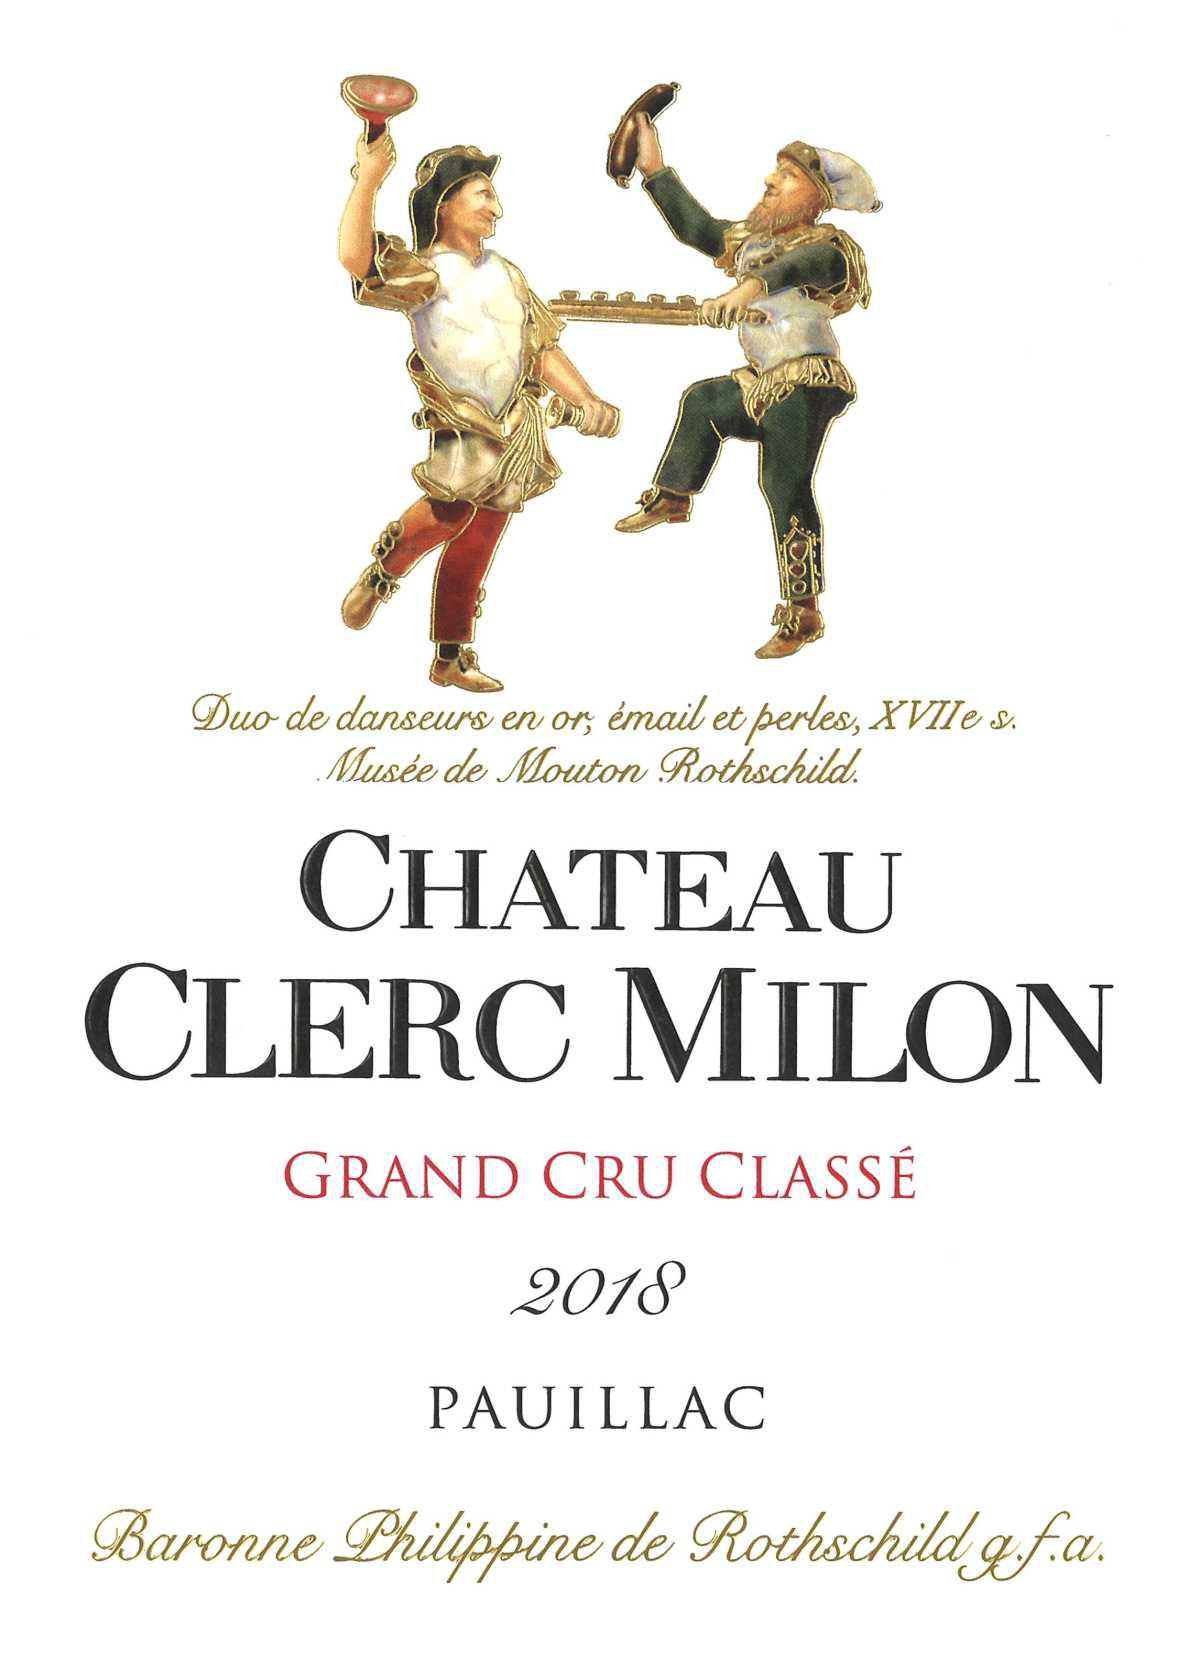 Château Clerc Milon